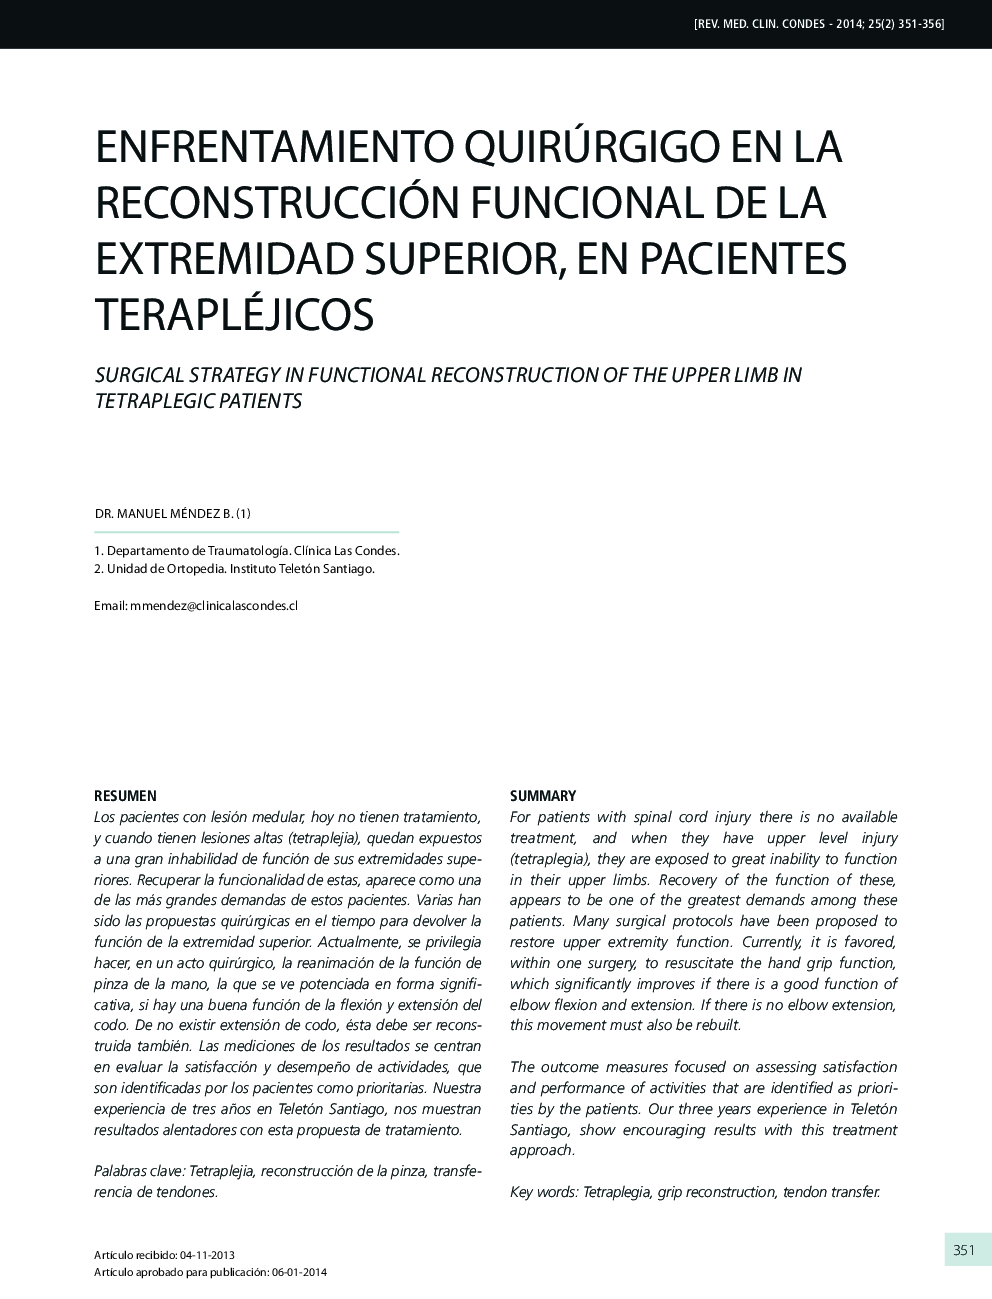 Enfrentamiento quirúrgigo en la reconstrucción funcional de la extremidad superior, en pacientes terapléjicos